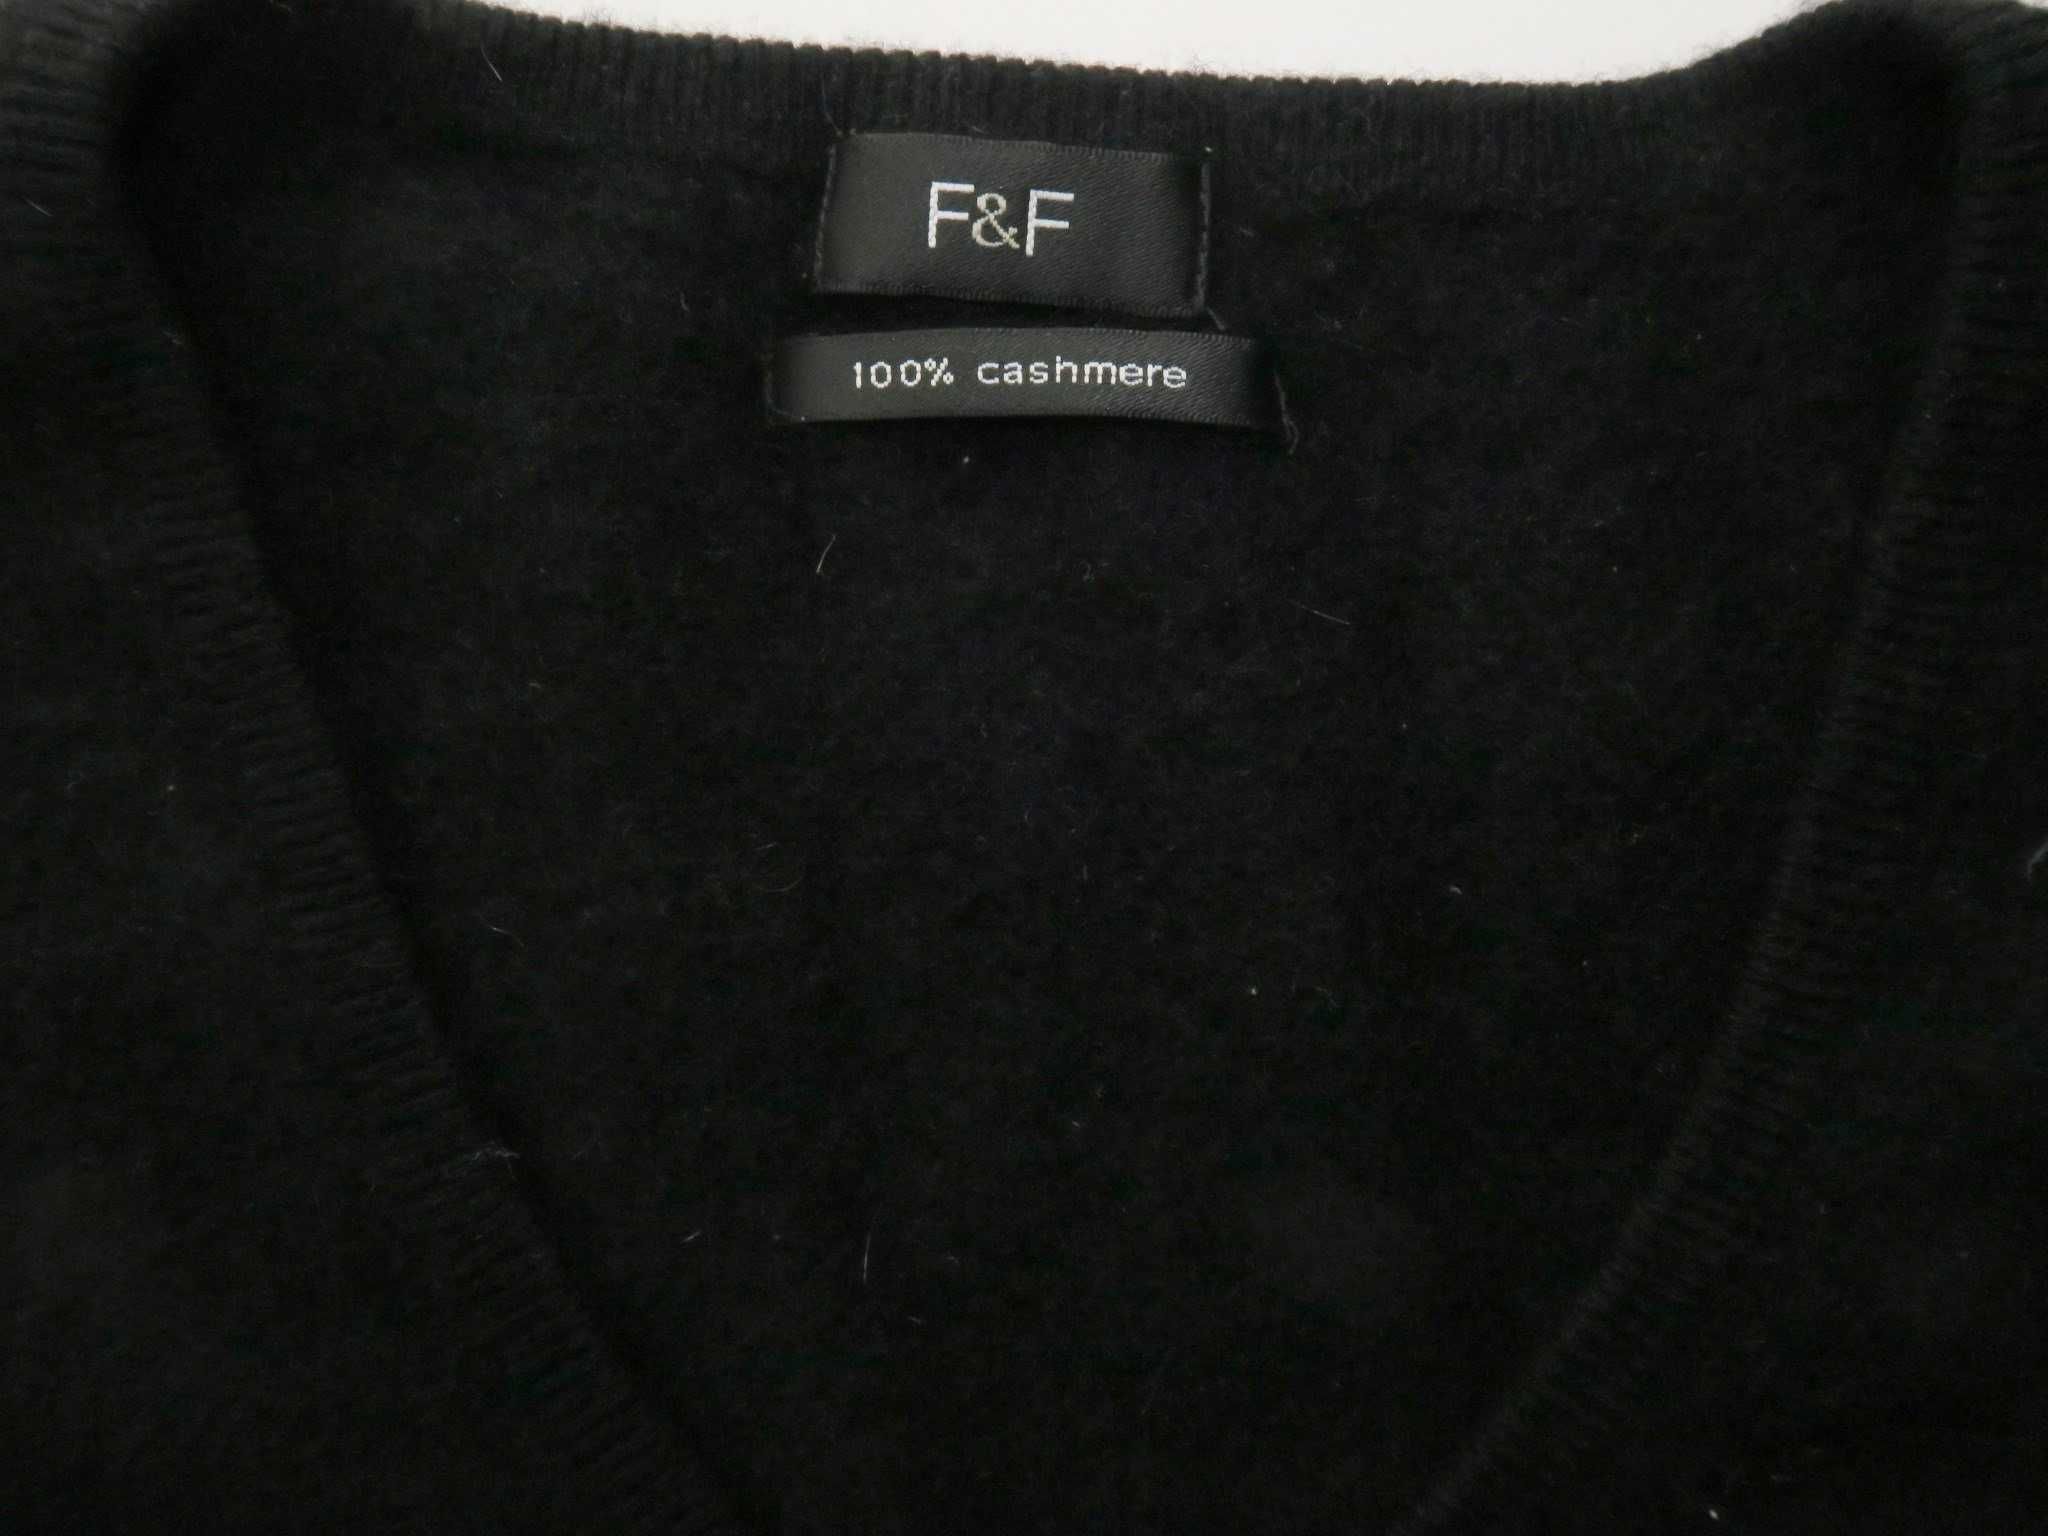 F&F kaszmirowy sweter damski XL